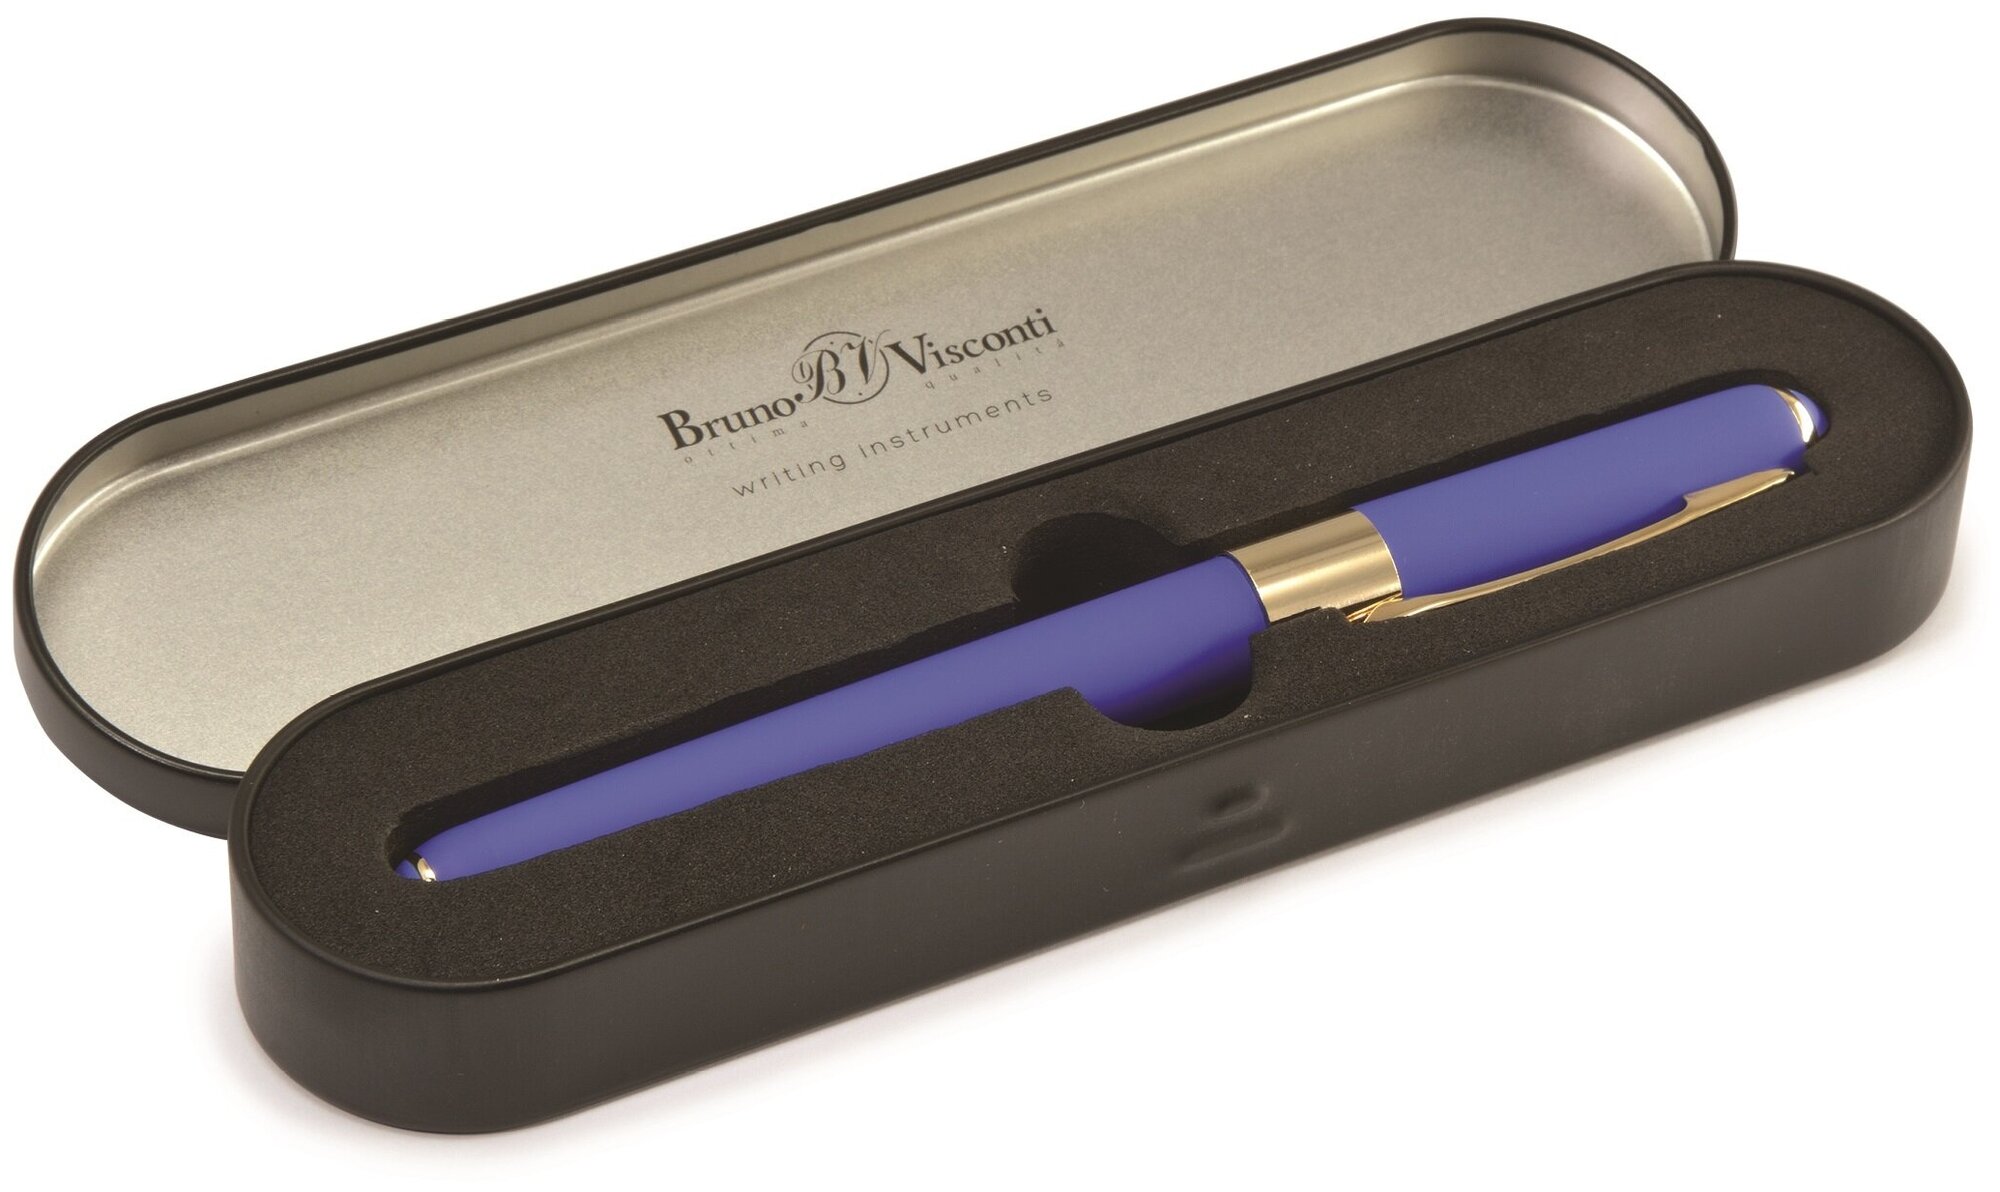 Ручка шариковая автоматическая BrunoVisconti, 0,5 мм, синяя, в футляре, Monaco (синий корпус), Арт. 20-0125/608